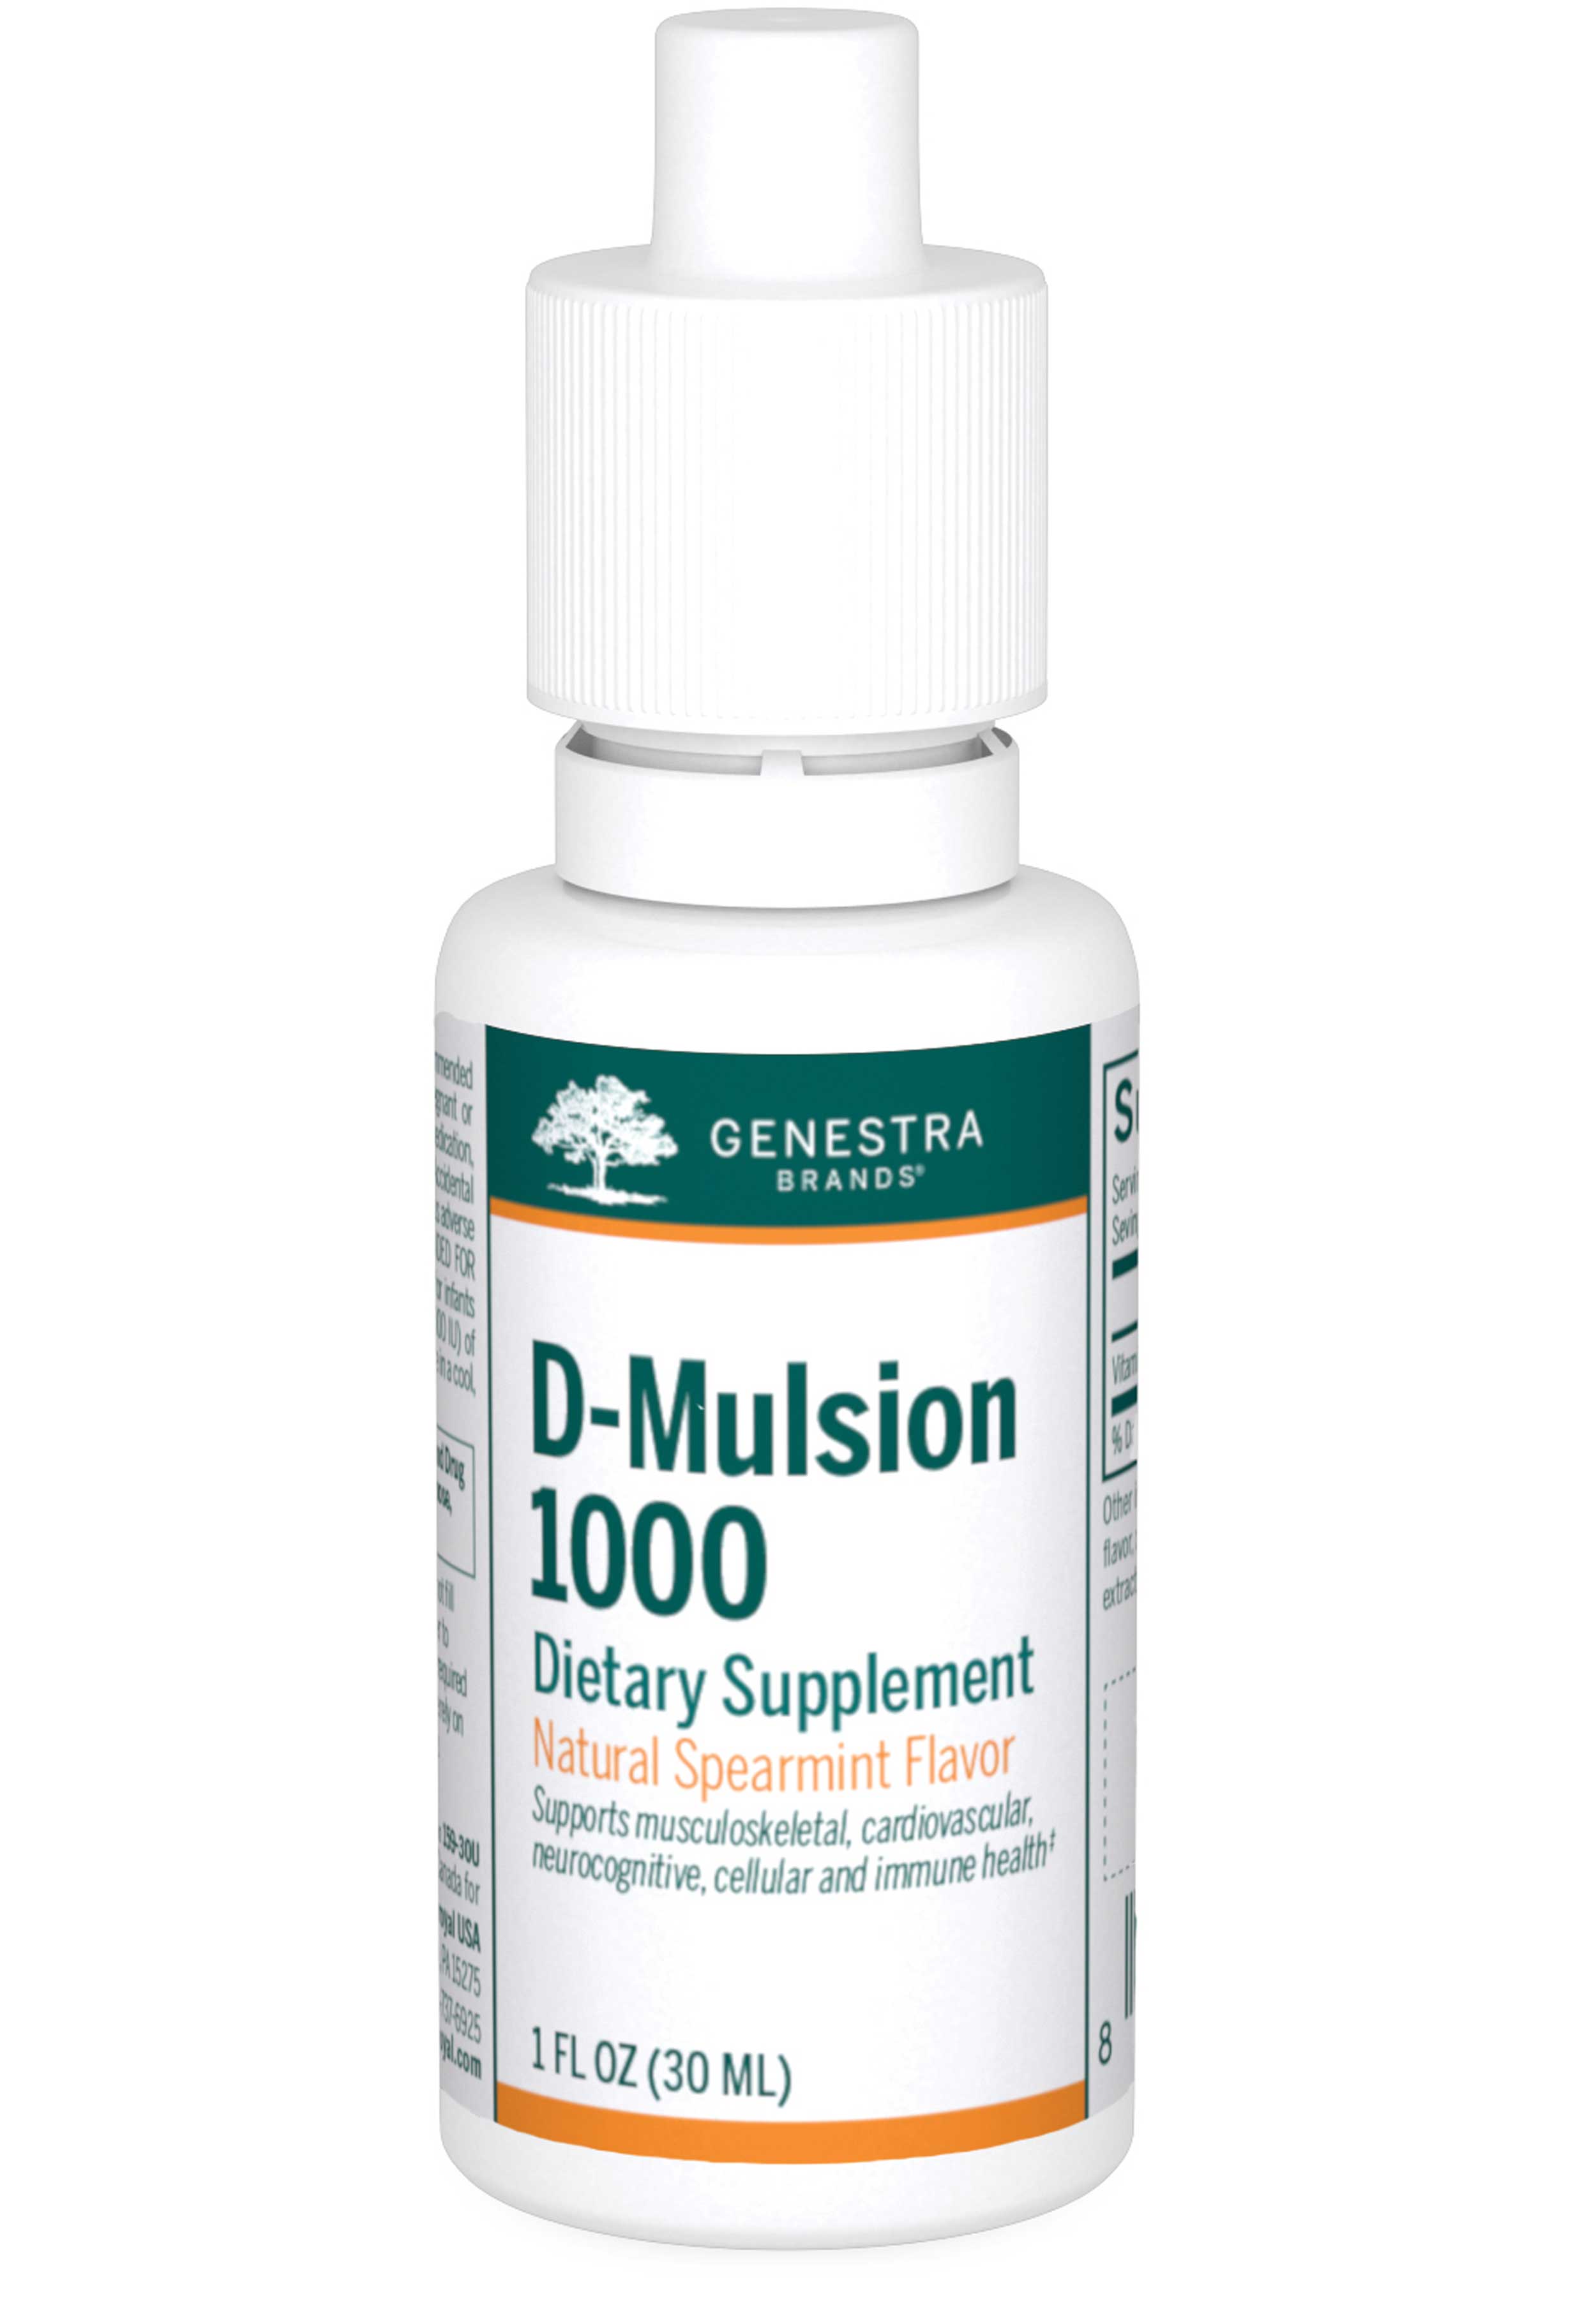 Genestra Brands D-Mulsion 1000